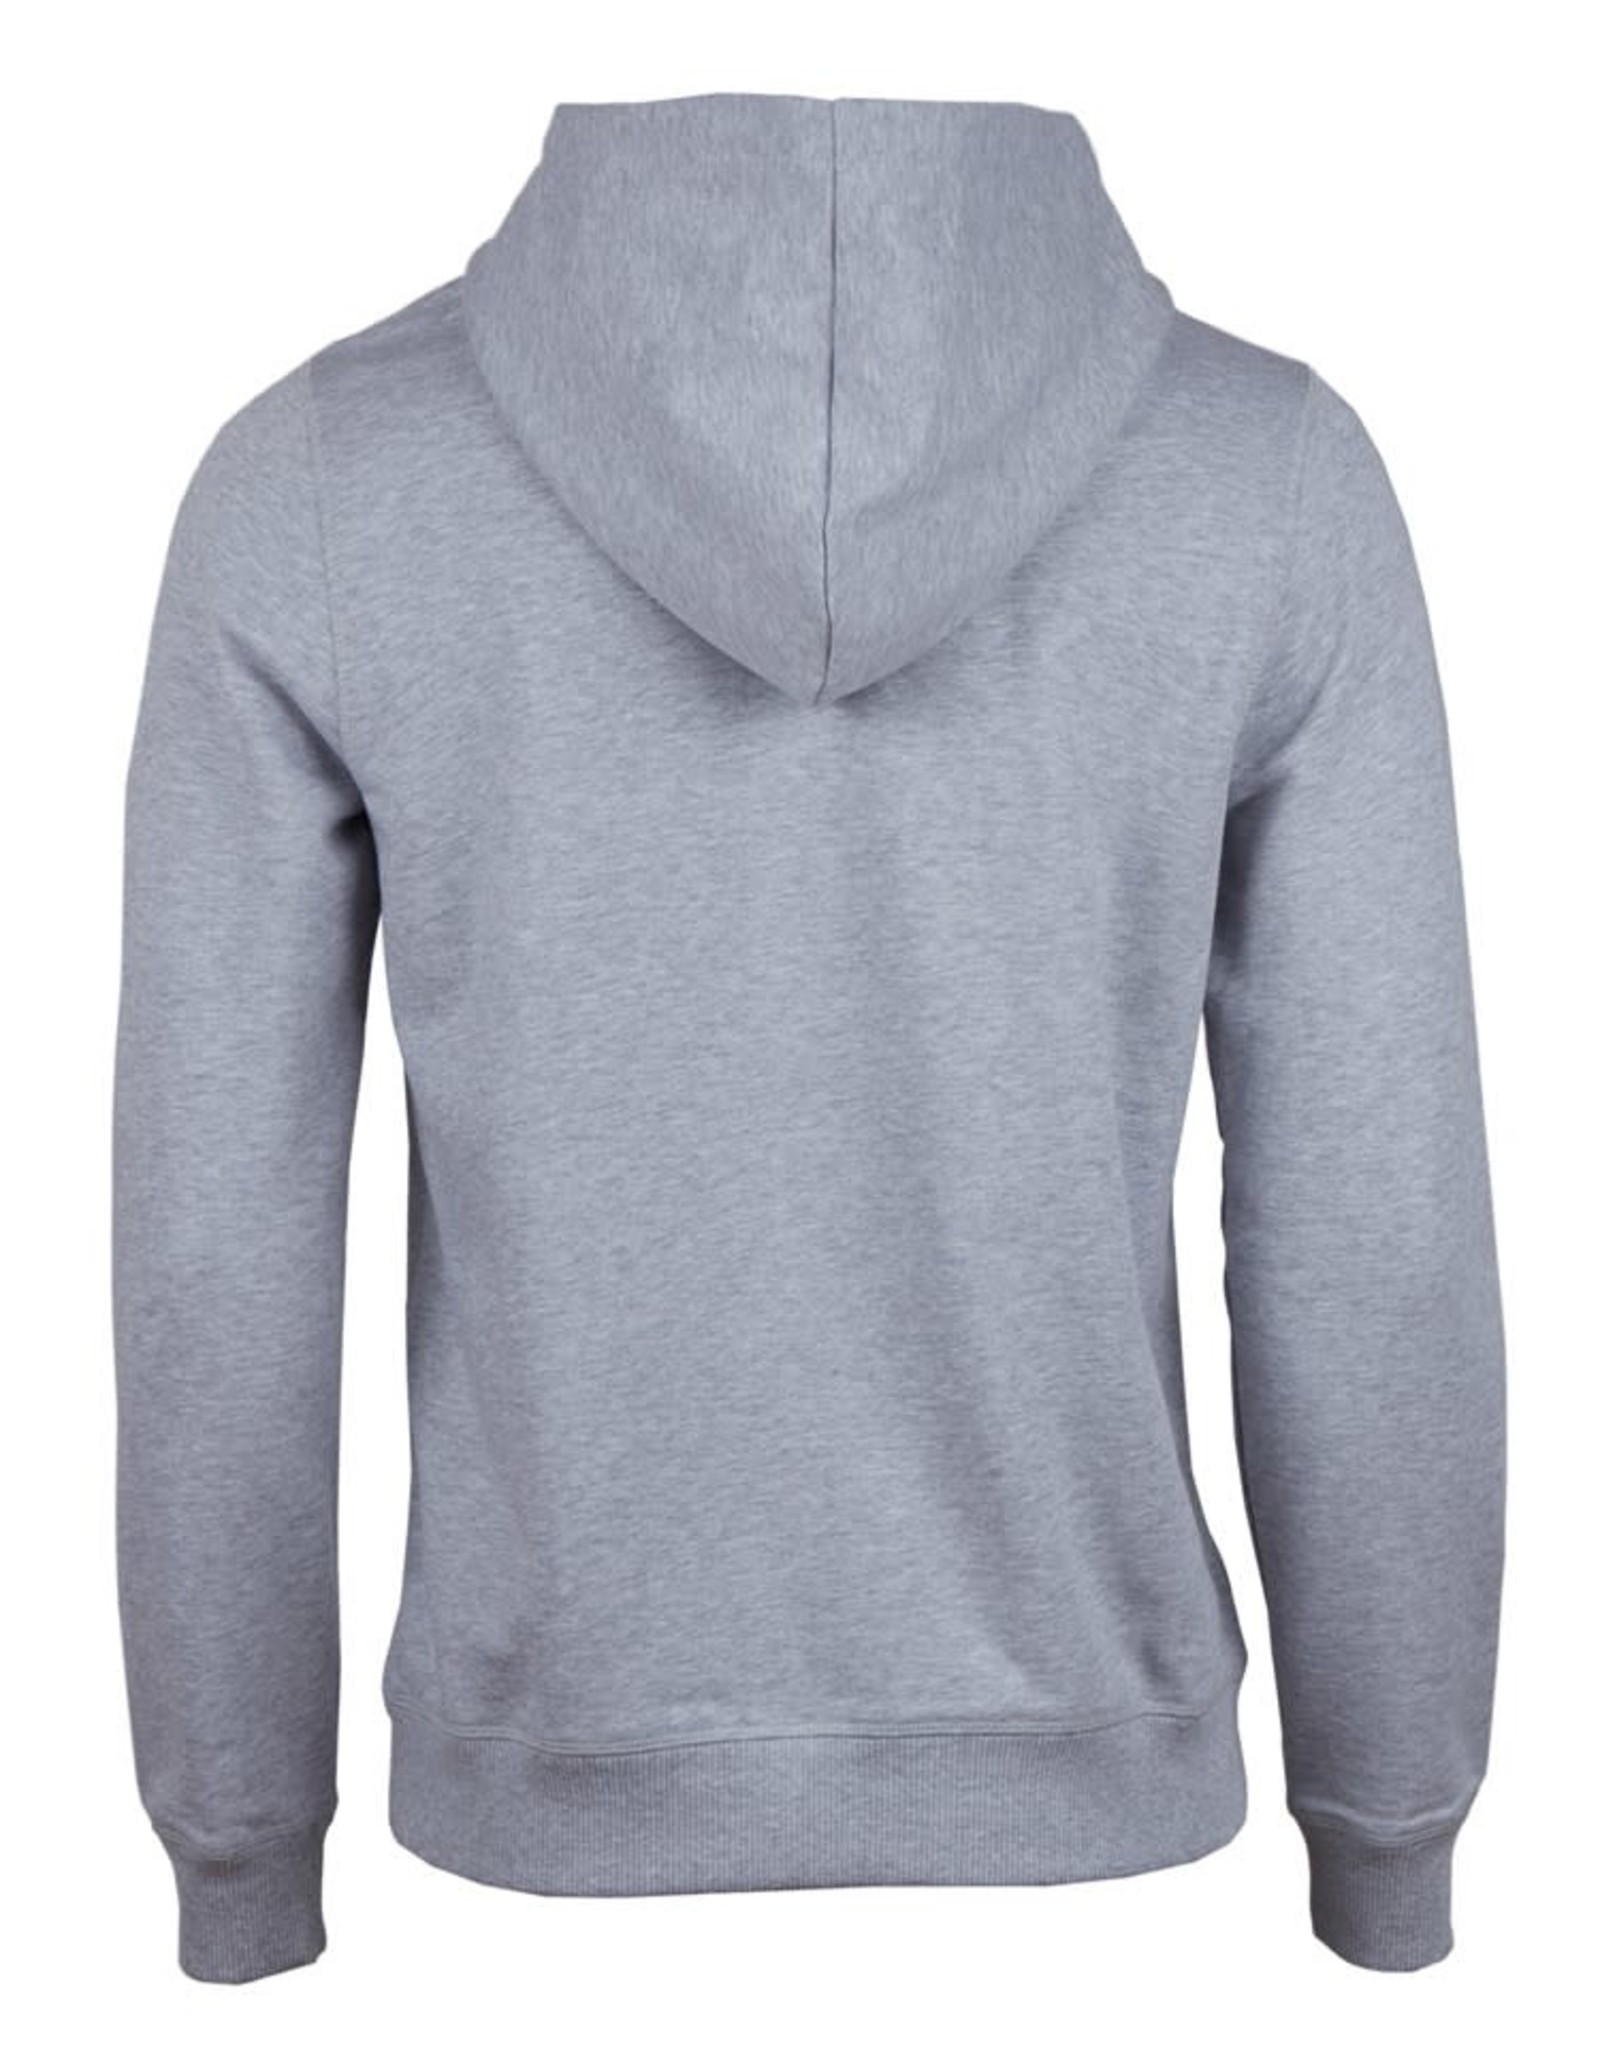 Stenströms Stenströms sweatshirt hoodie grey 440046-2487/300